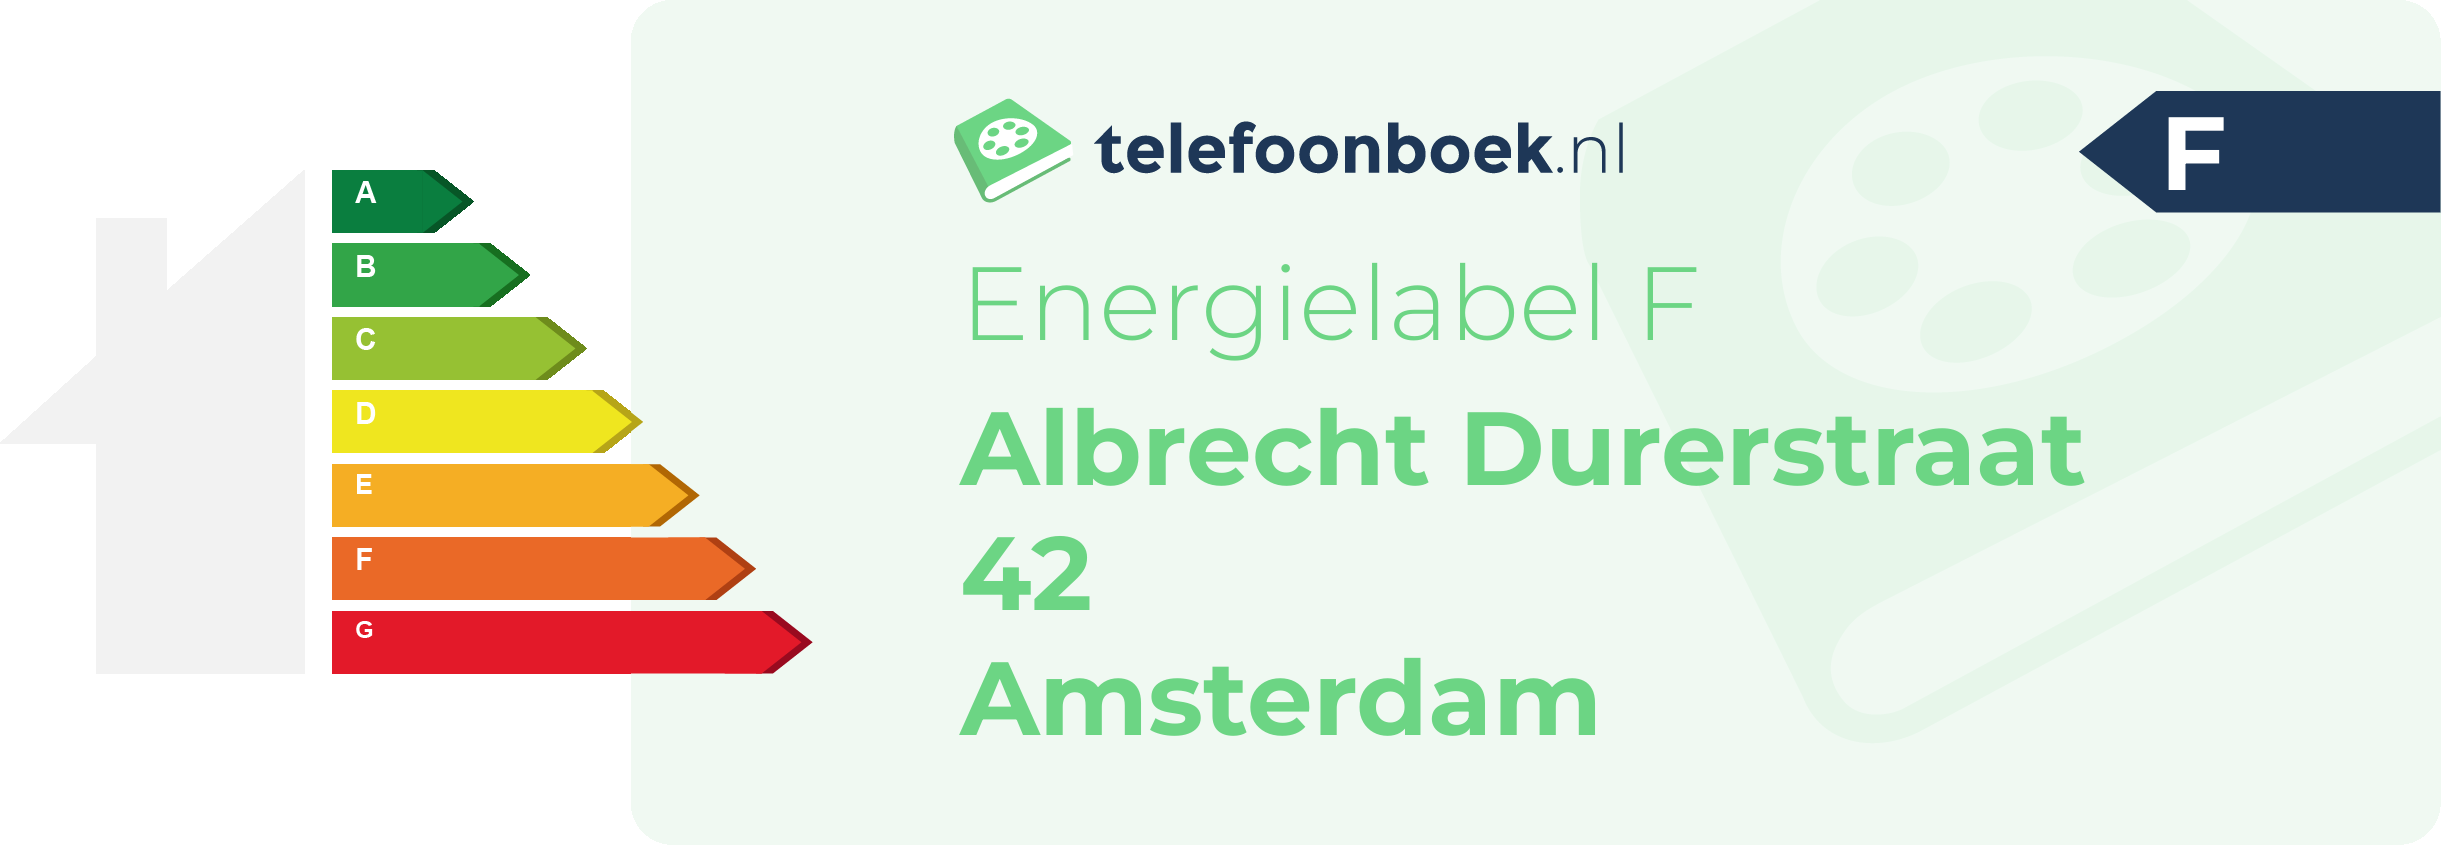 Energielabel Albrecht Durerstraat 42 Amsterdam